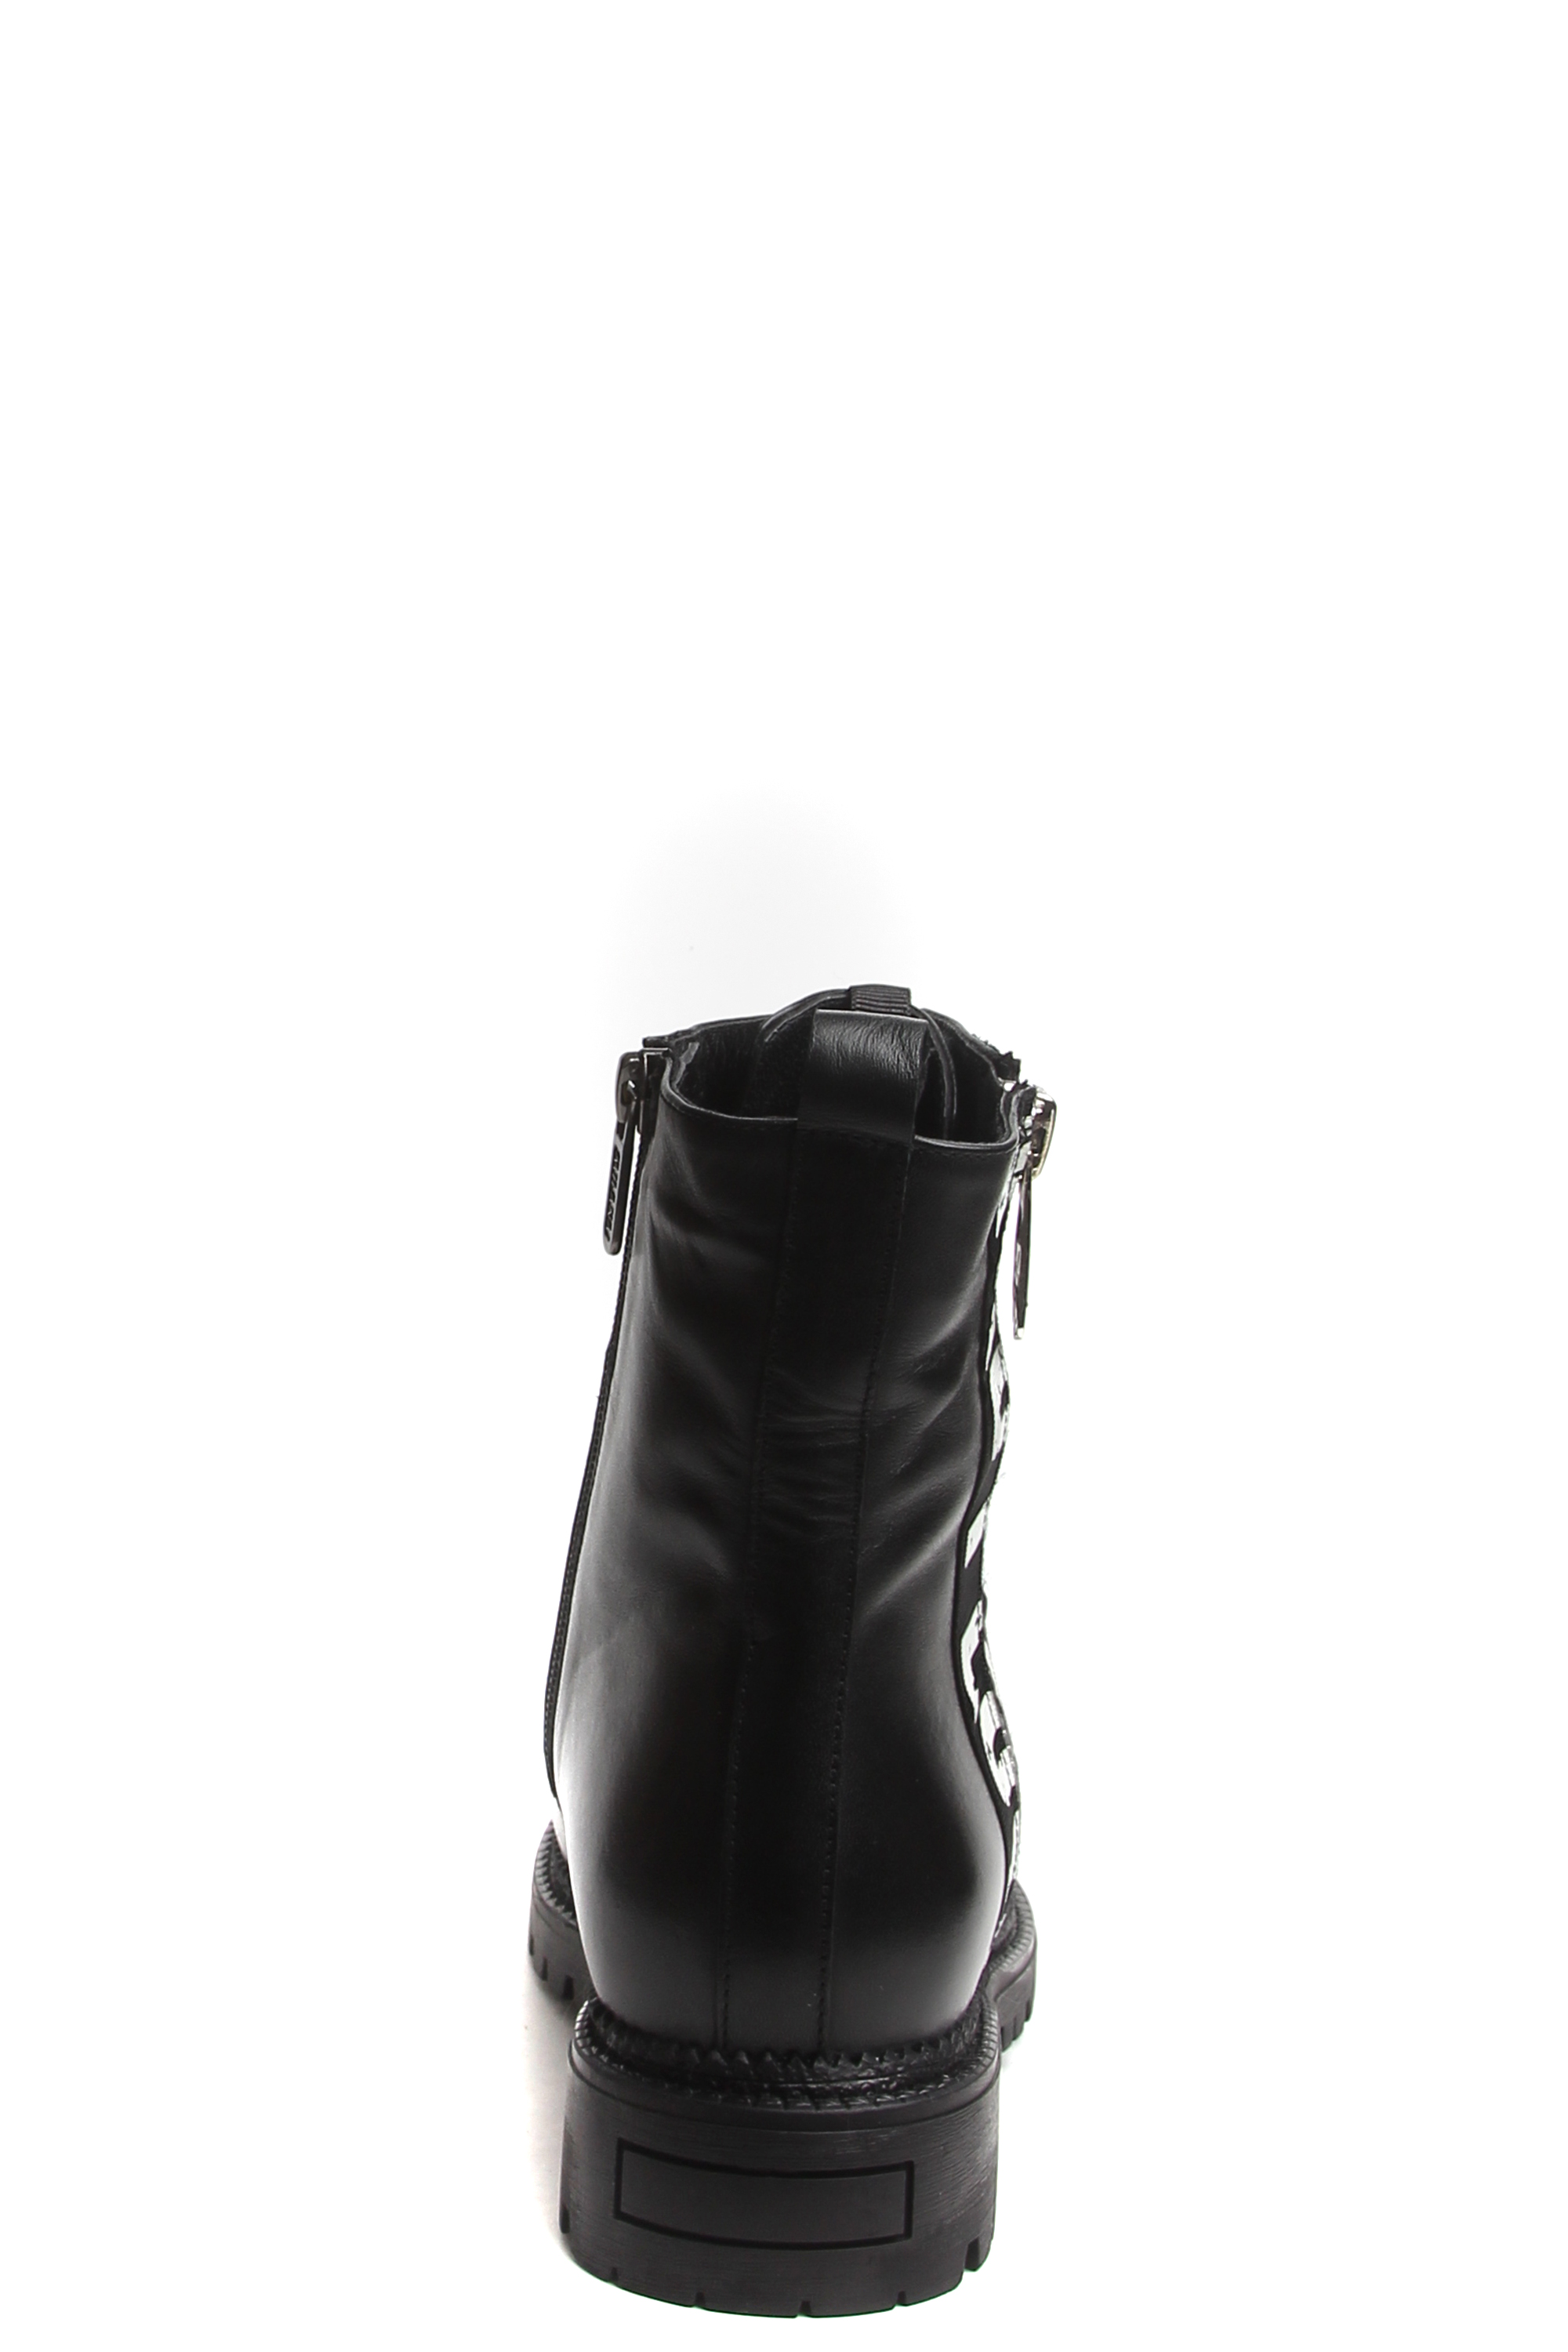 Ботинки MILANA 182377-1-110F черный - купить 12990